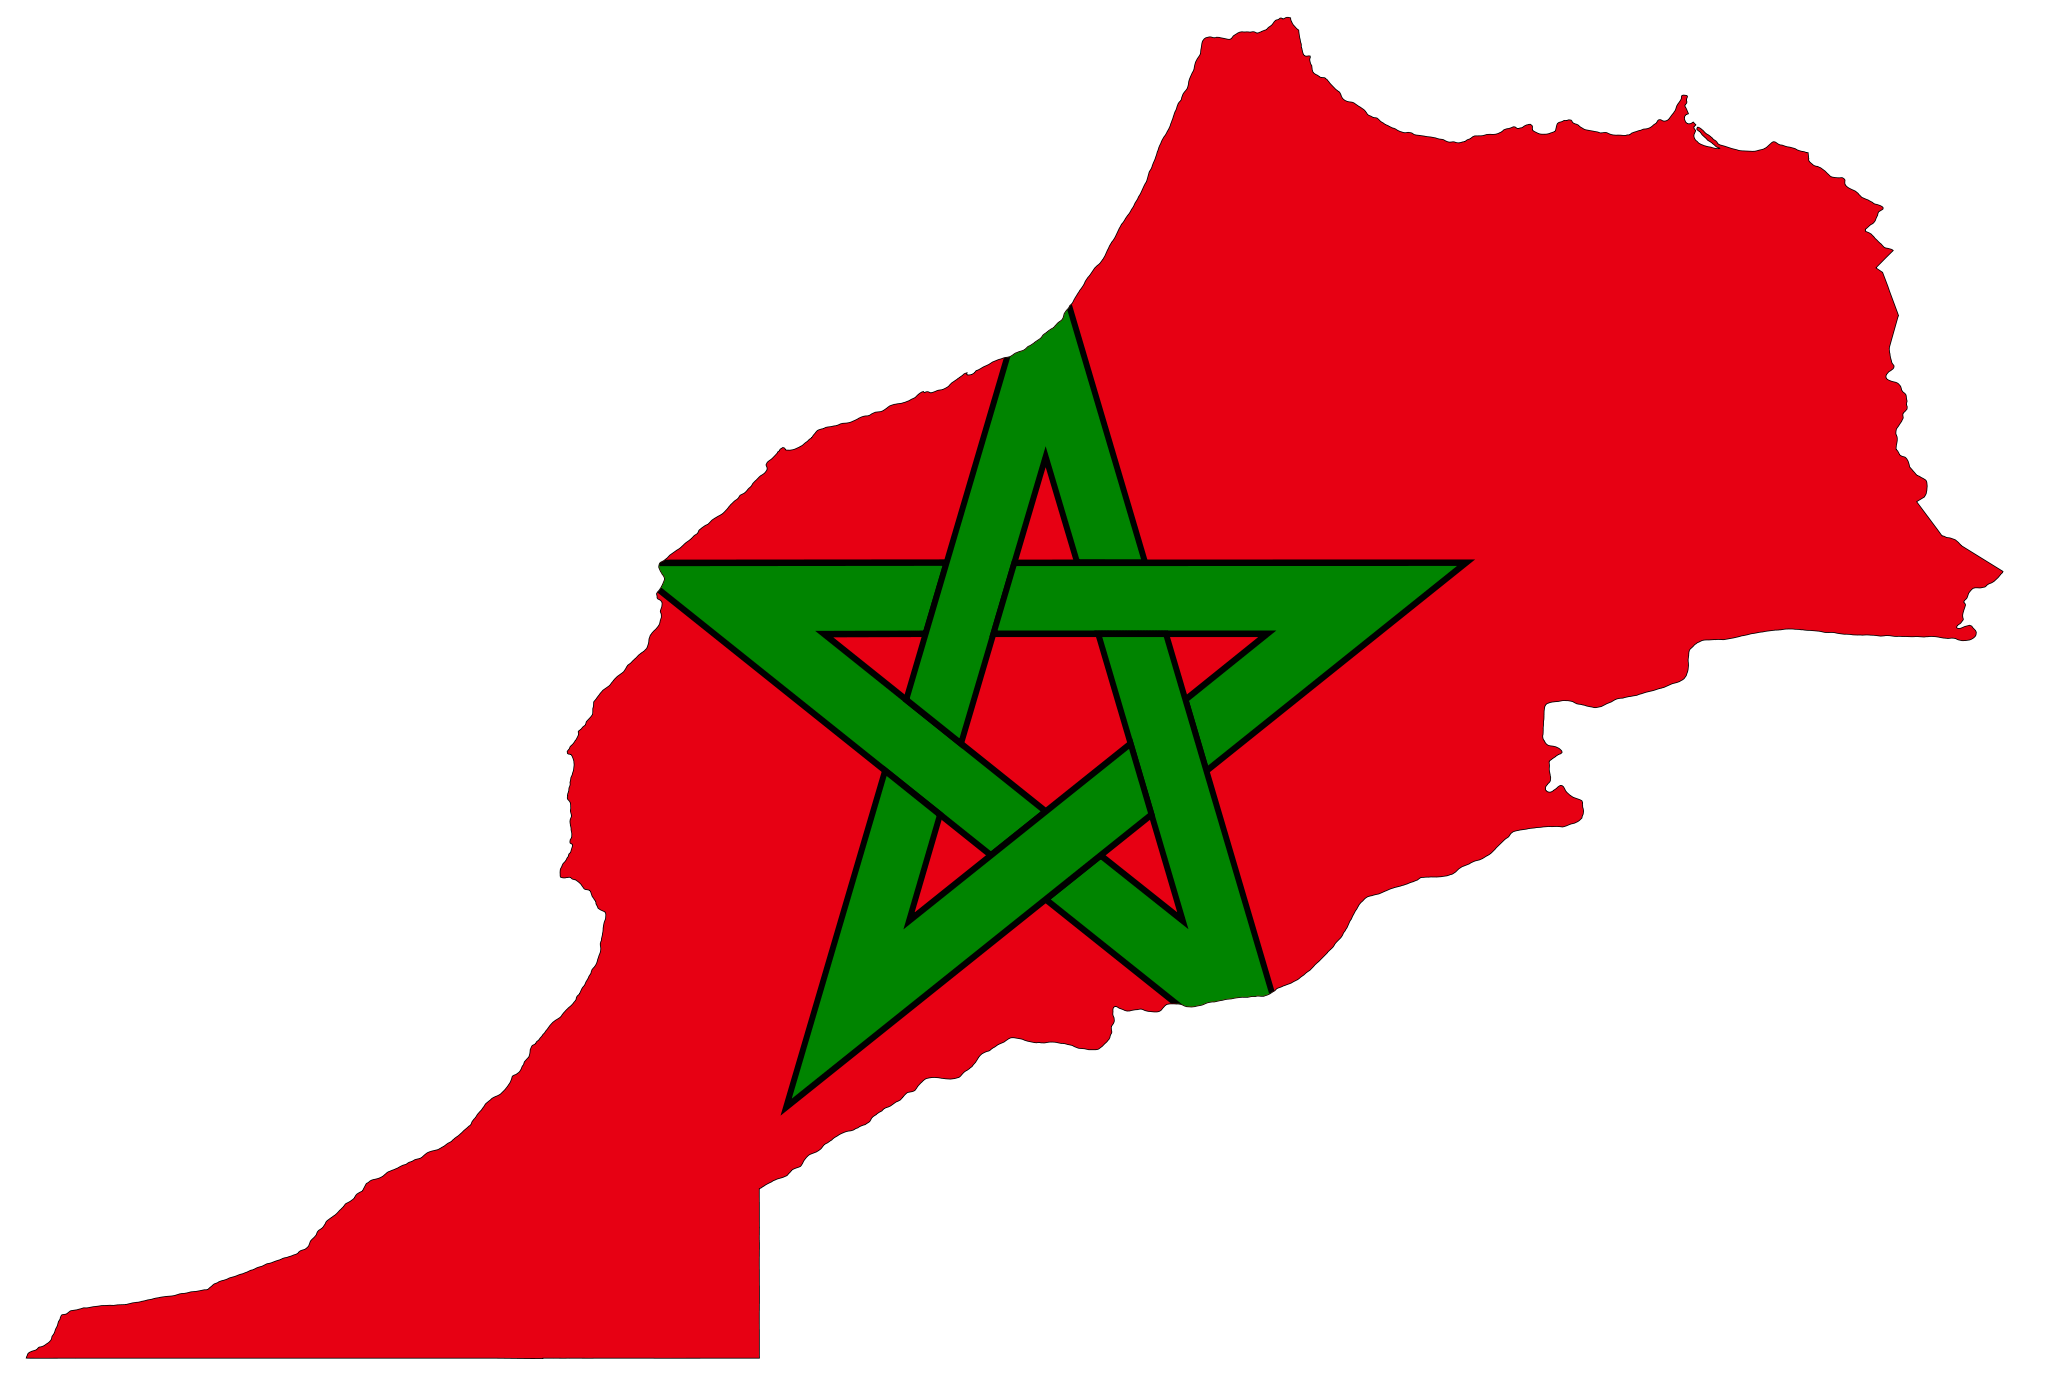 Morocco watawat na may mataas na kalidad na png